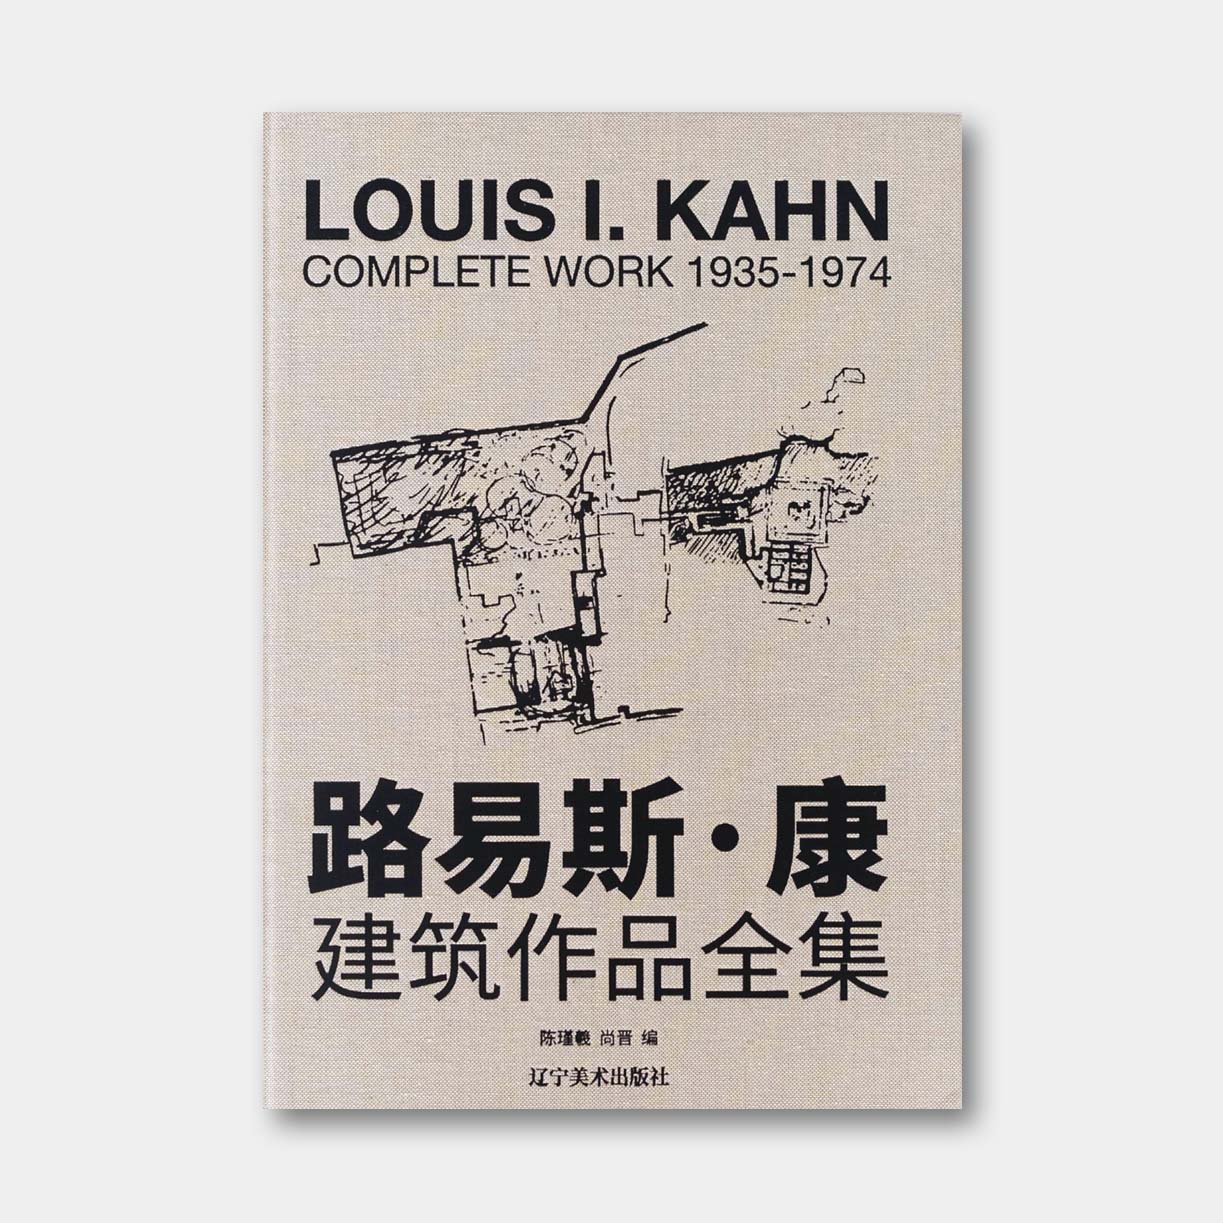 中文版《路易斯·康建筑作品全集1935—1974》，66个项目、8开巨幅手绘、图纸、模型档案呈现